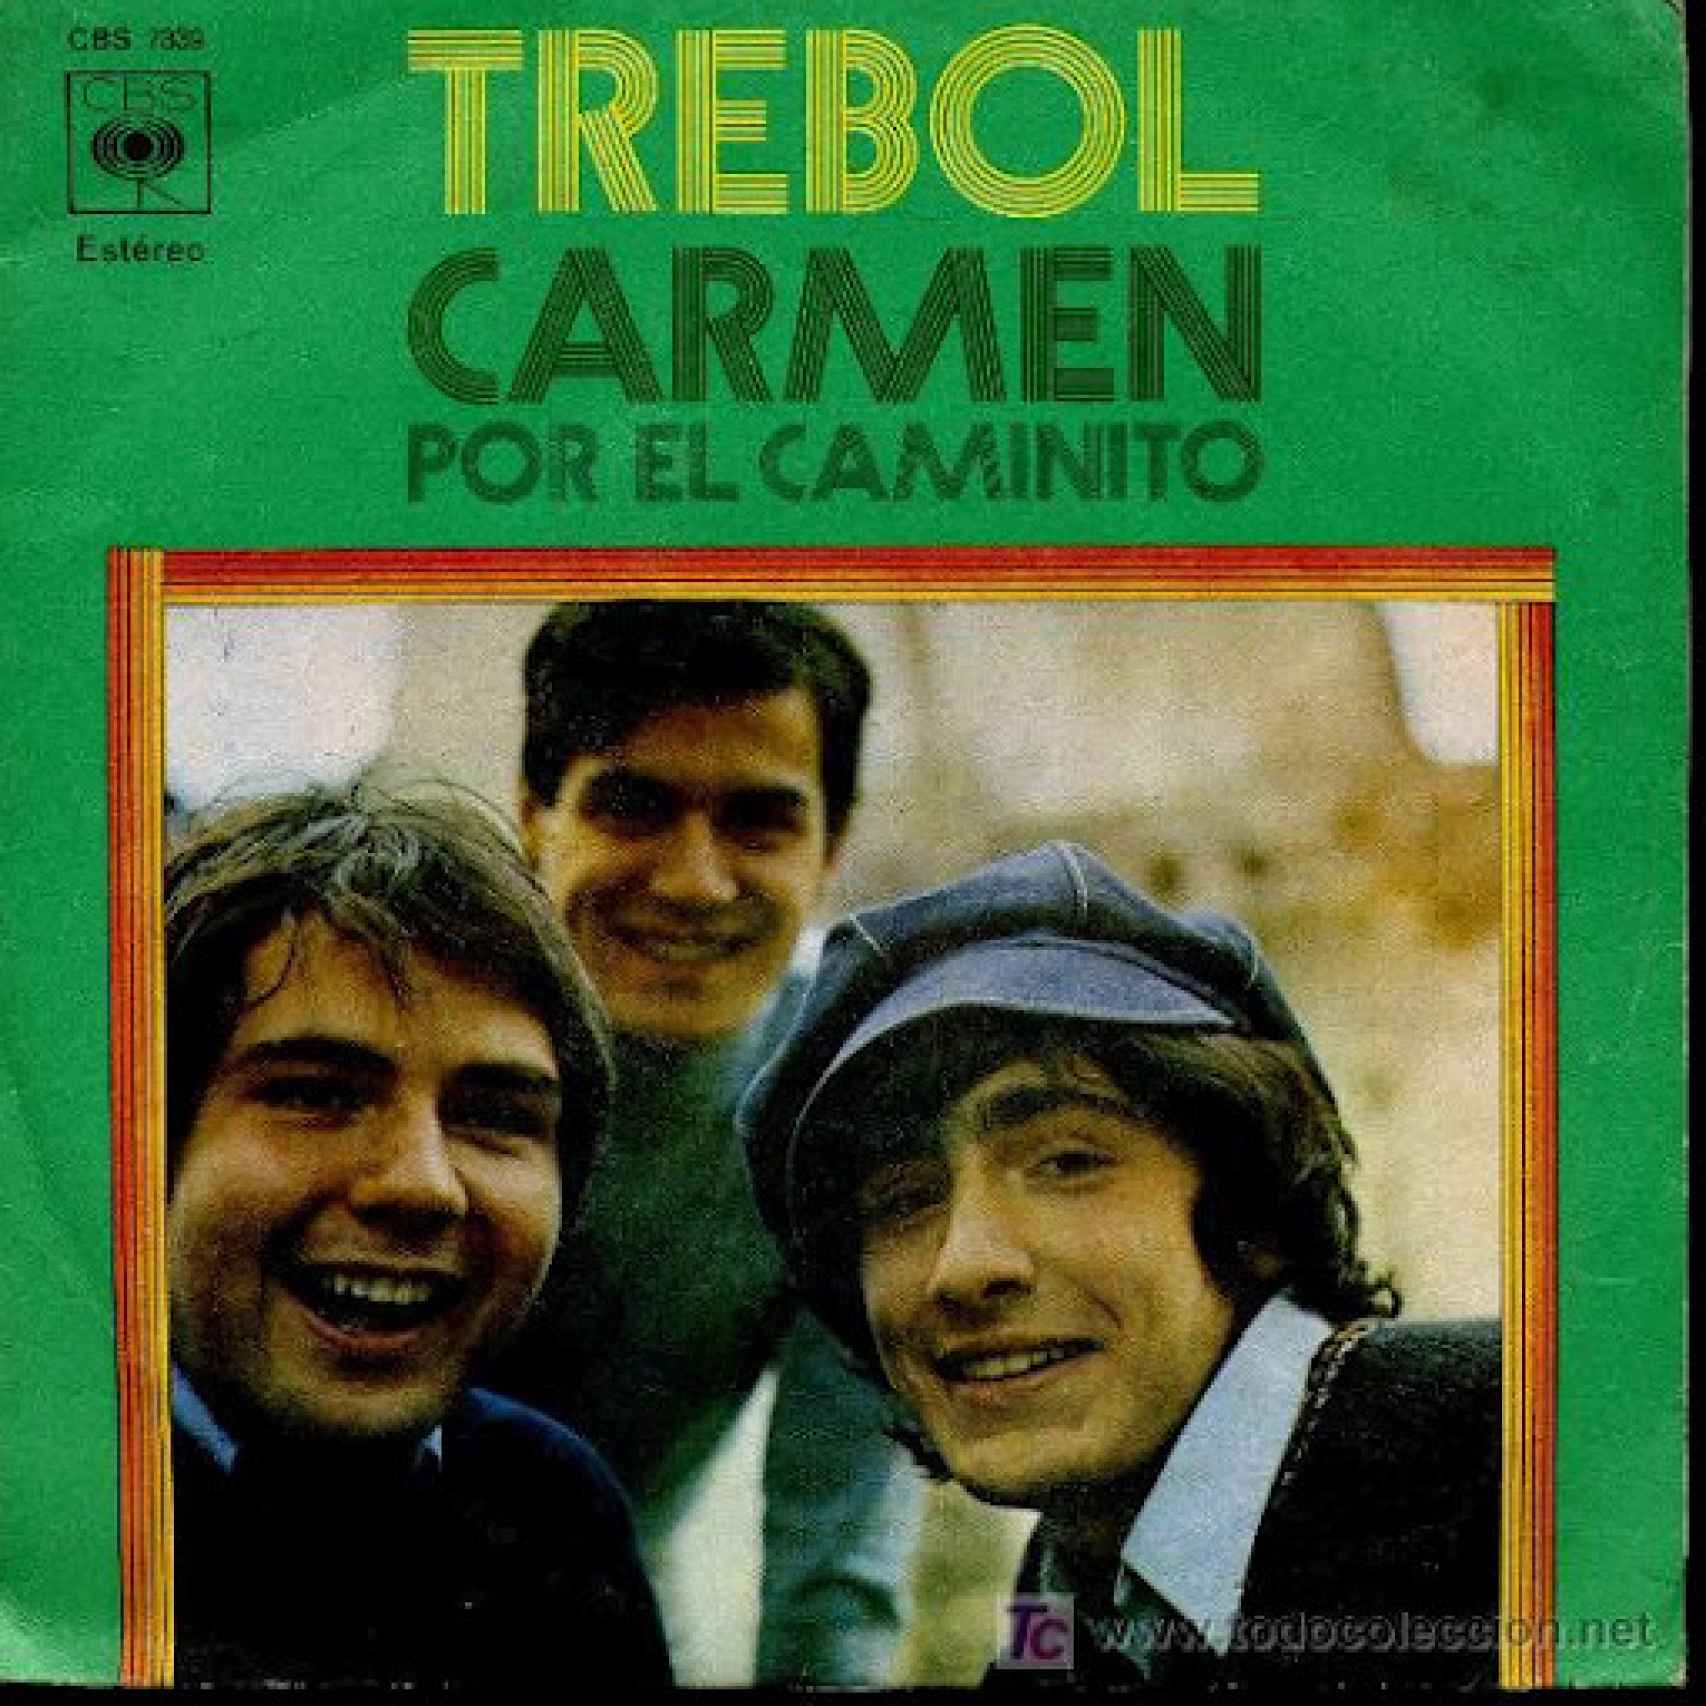 La melodía Carmen fue número uno en las listas de éxitos musicales. Álvaro Bustos, con gorra, era cantante del grupo Trébol.